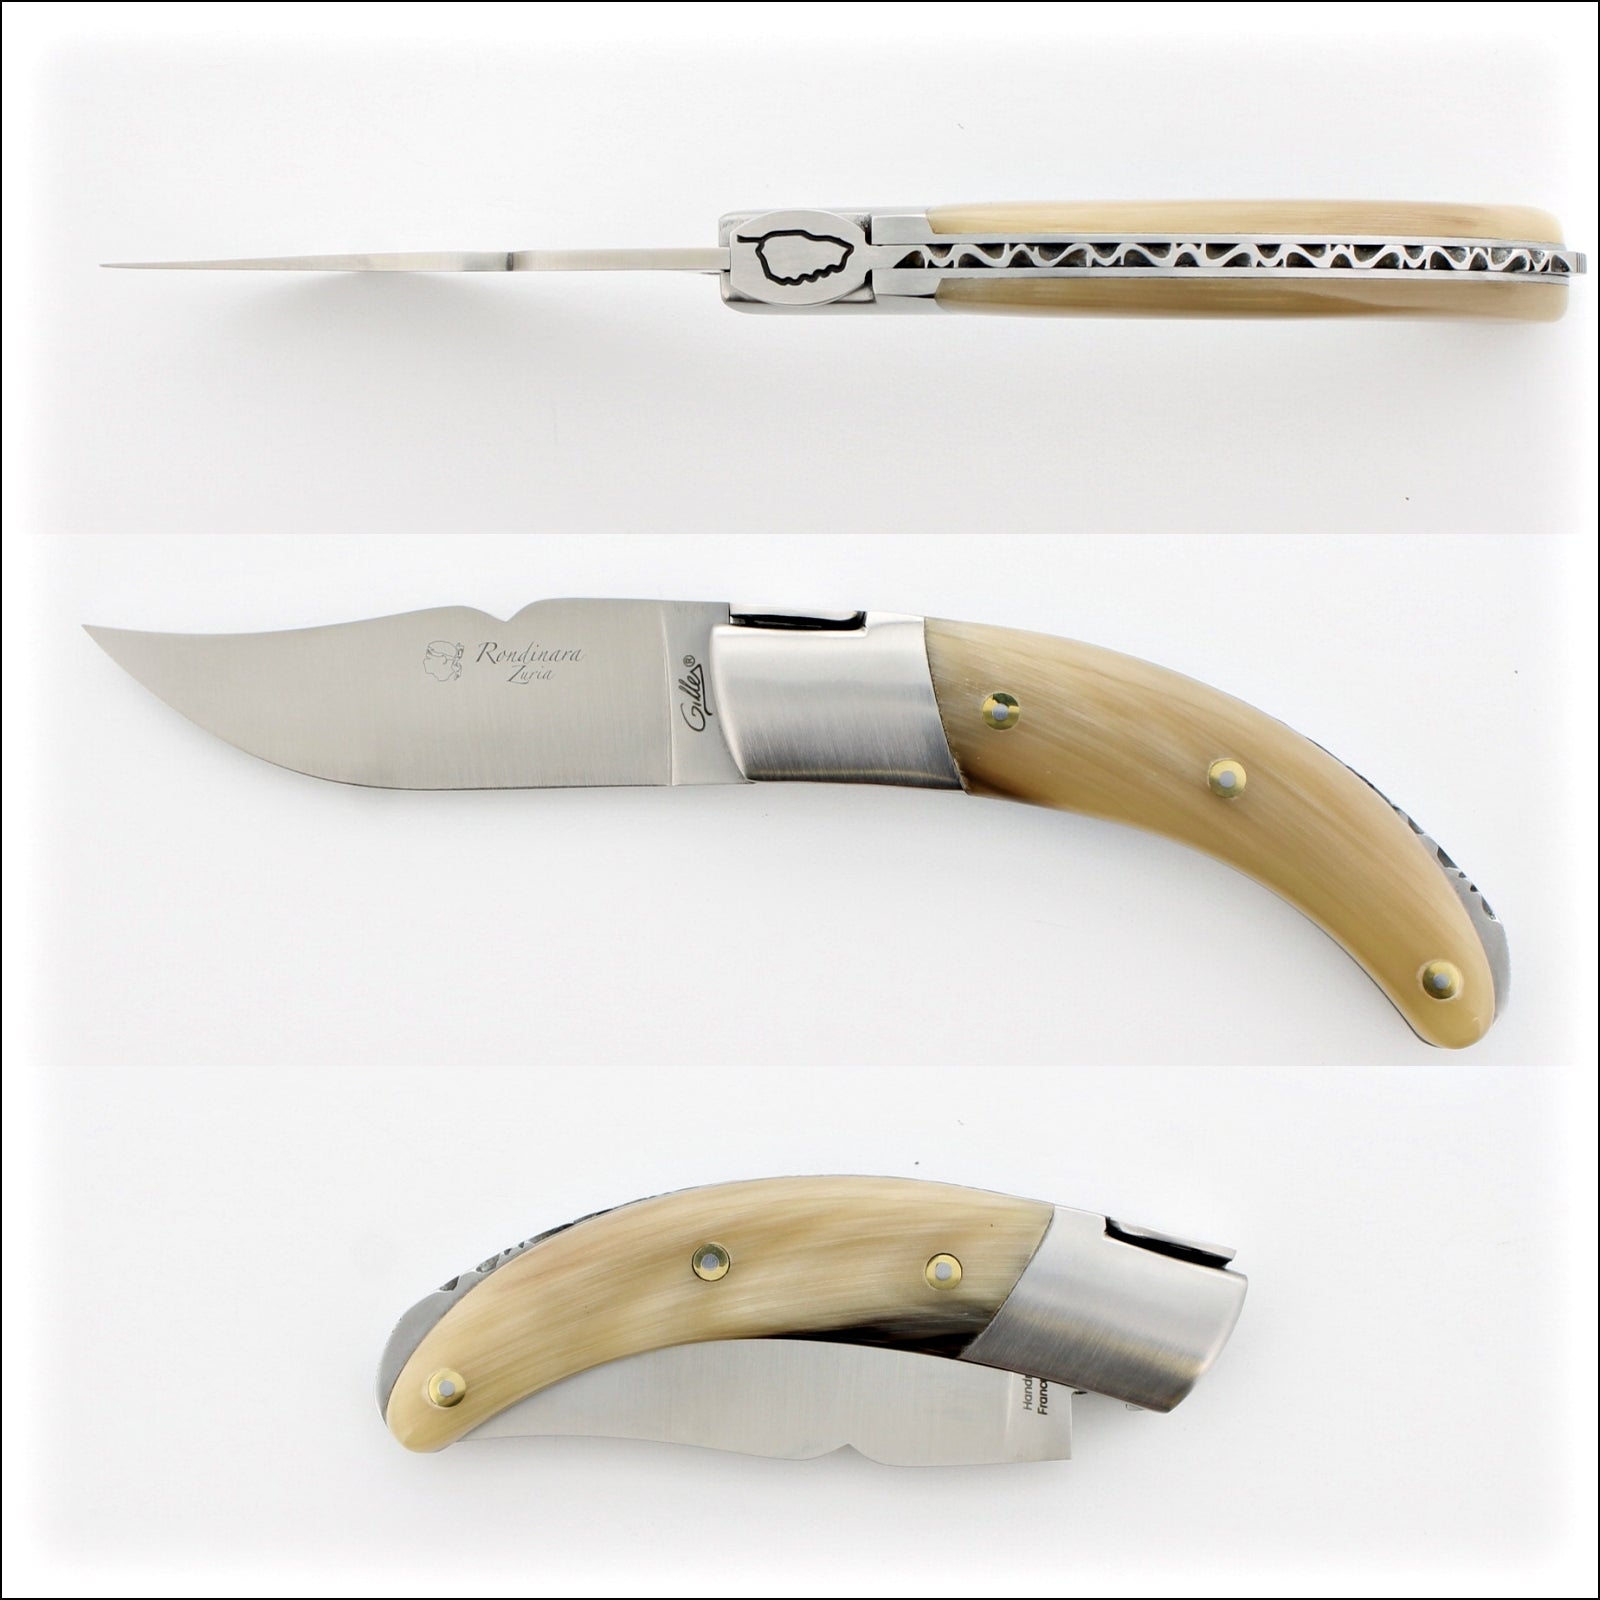 Corsican Rondinara Folding Knife - Horn Tip Handle